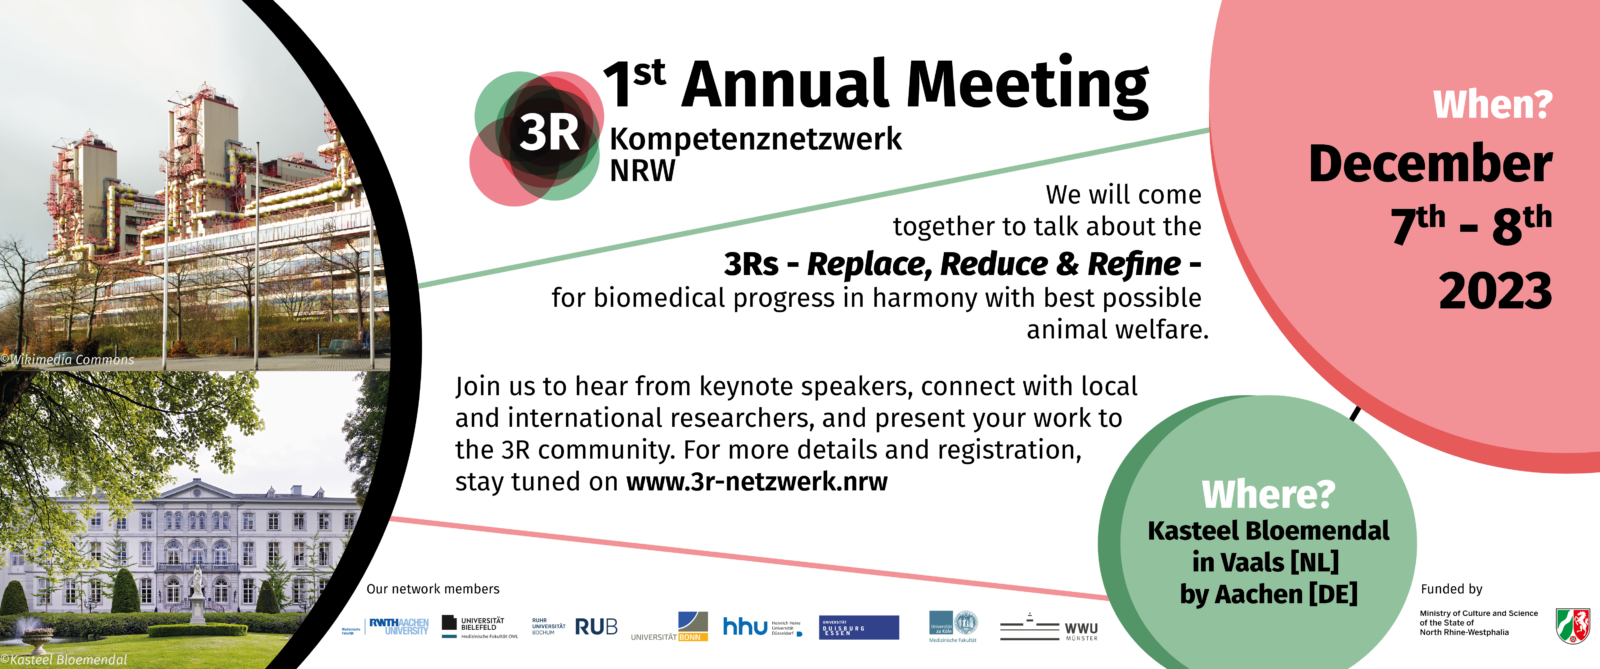 1. Annual Meeting 3R Kompetenznetzwerk NRW